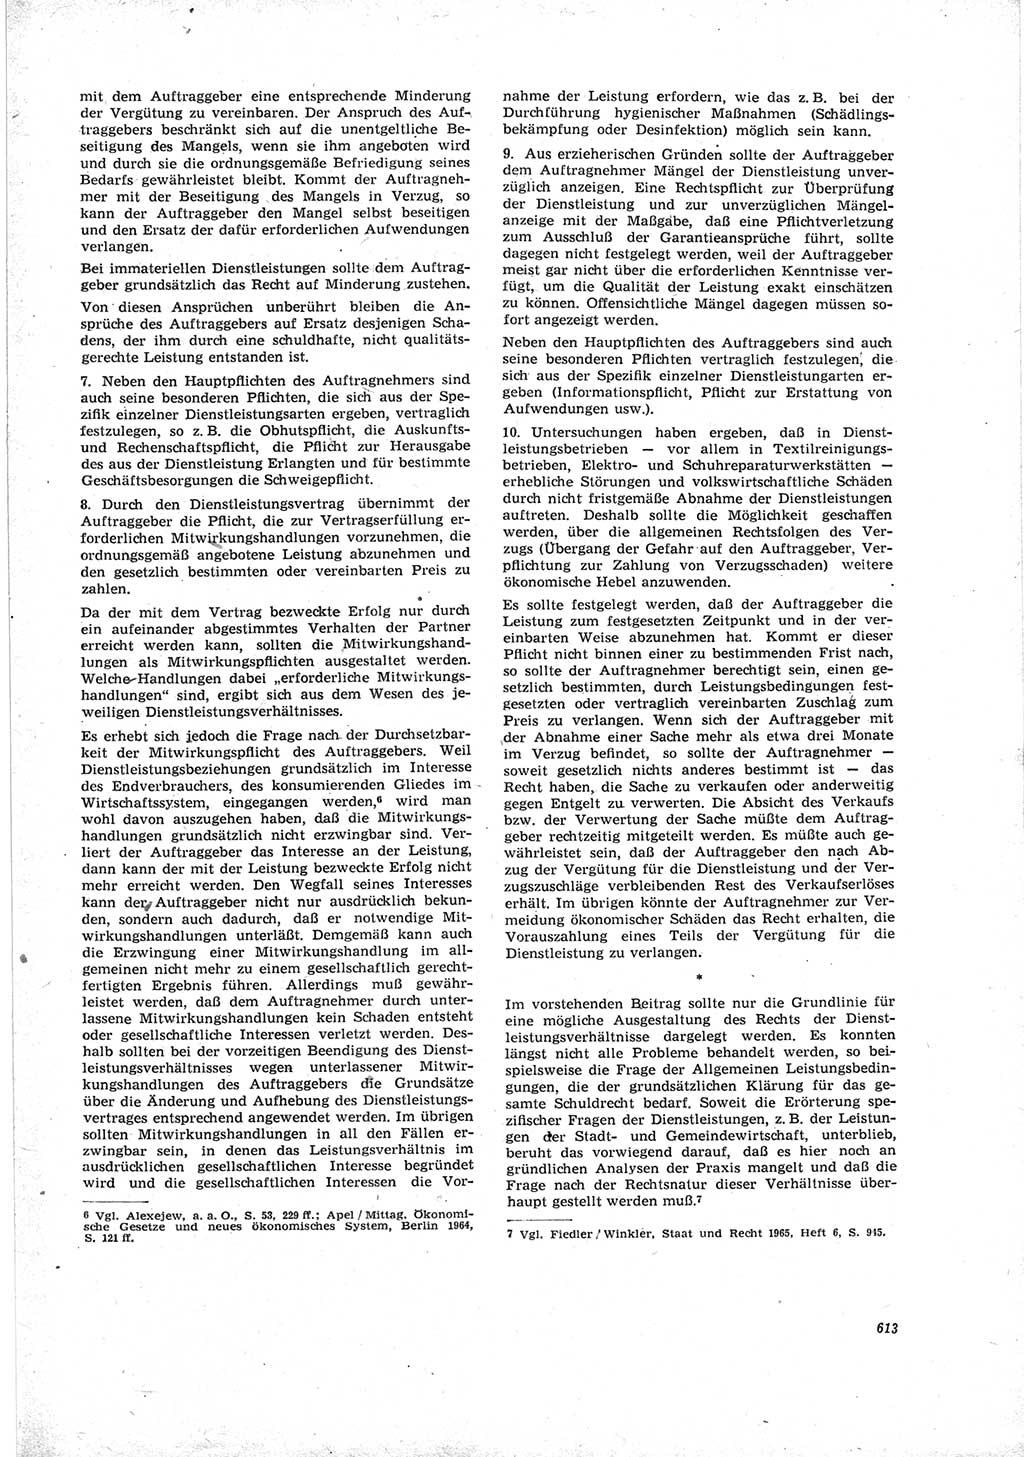 Neue Justiz (NJ), Zeitschrift für Recht und Rechtswissenschaft [Deutsche Demokratische Republik (DDR)], 19. Jahrgang 1965, Seite 613 (NJ DDR 1965, S. 613)